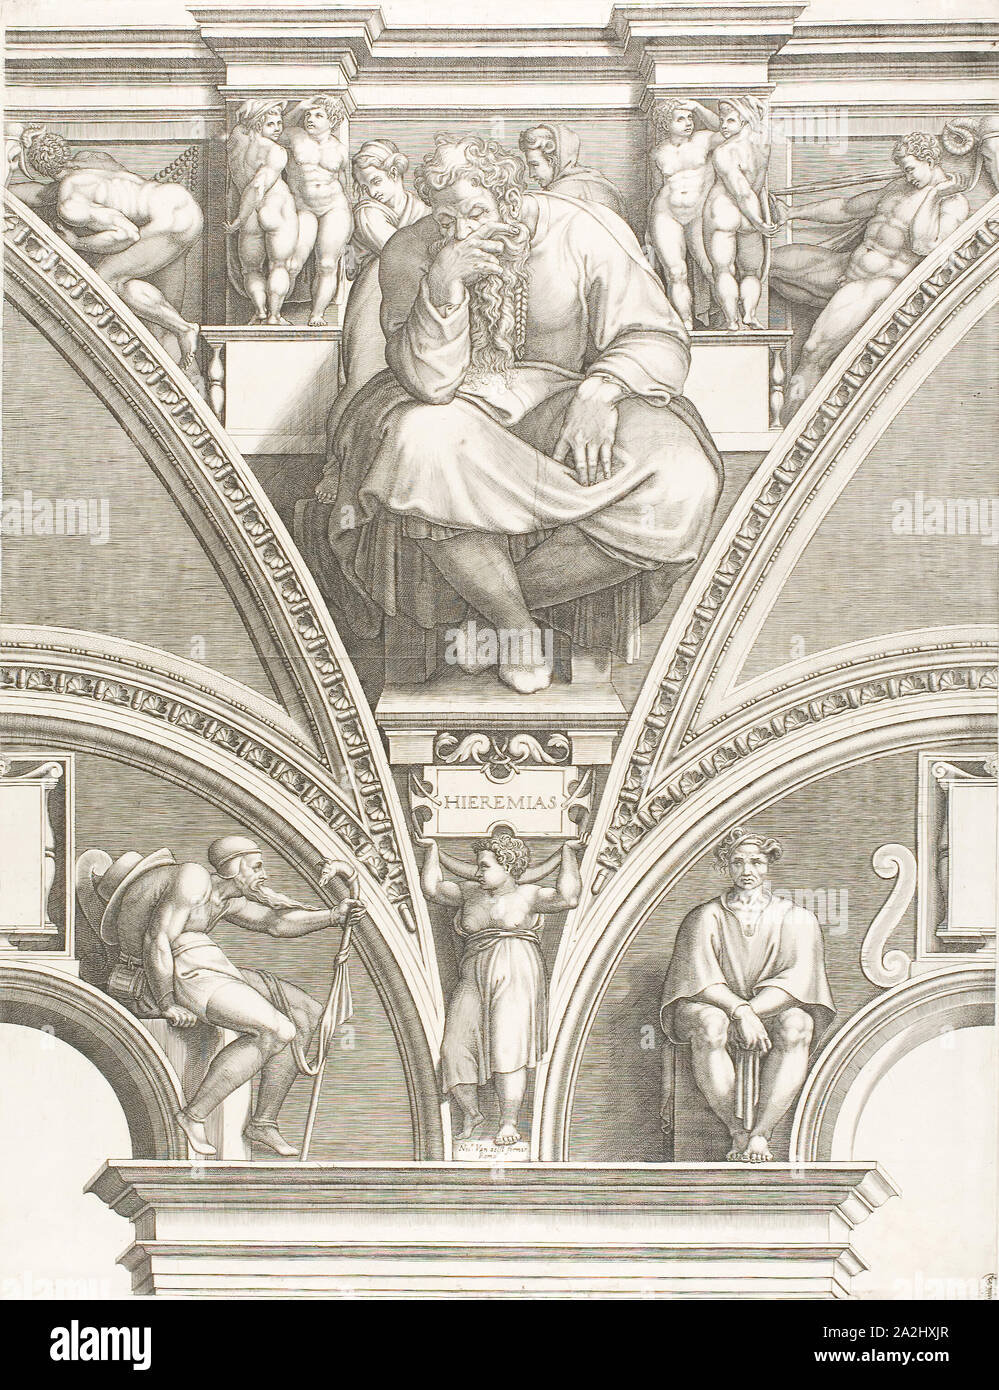 El profeta Jeremías, comienzos1570s, Giorgio Ghisi (Italiano, 1520-1582), después, el italiano Michelangelo Buonarroti (1475-1564), Italia, grabado en negro sobre papel establecido de marfil, 569 x 439 mm Foto de stock